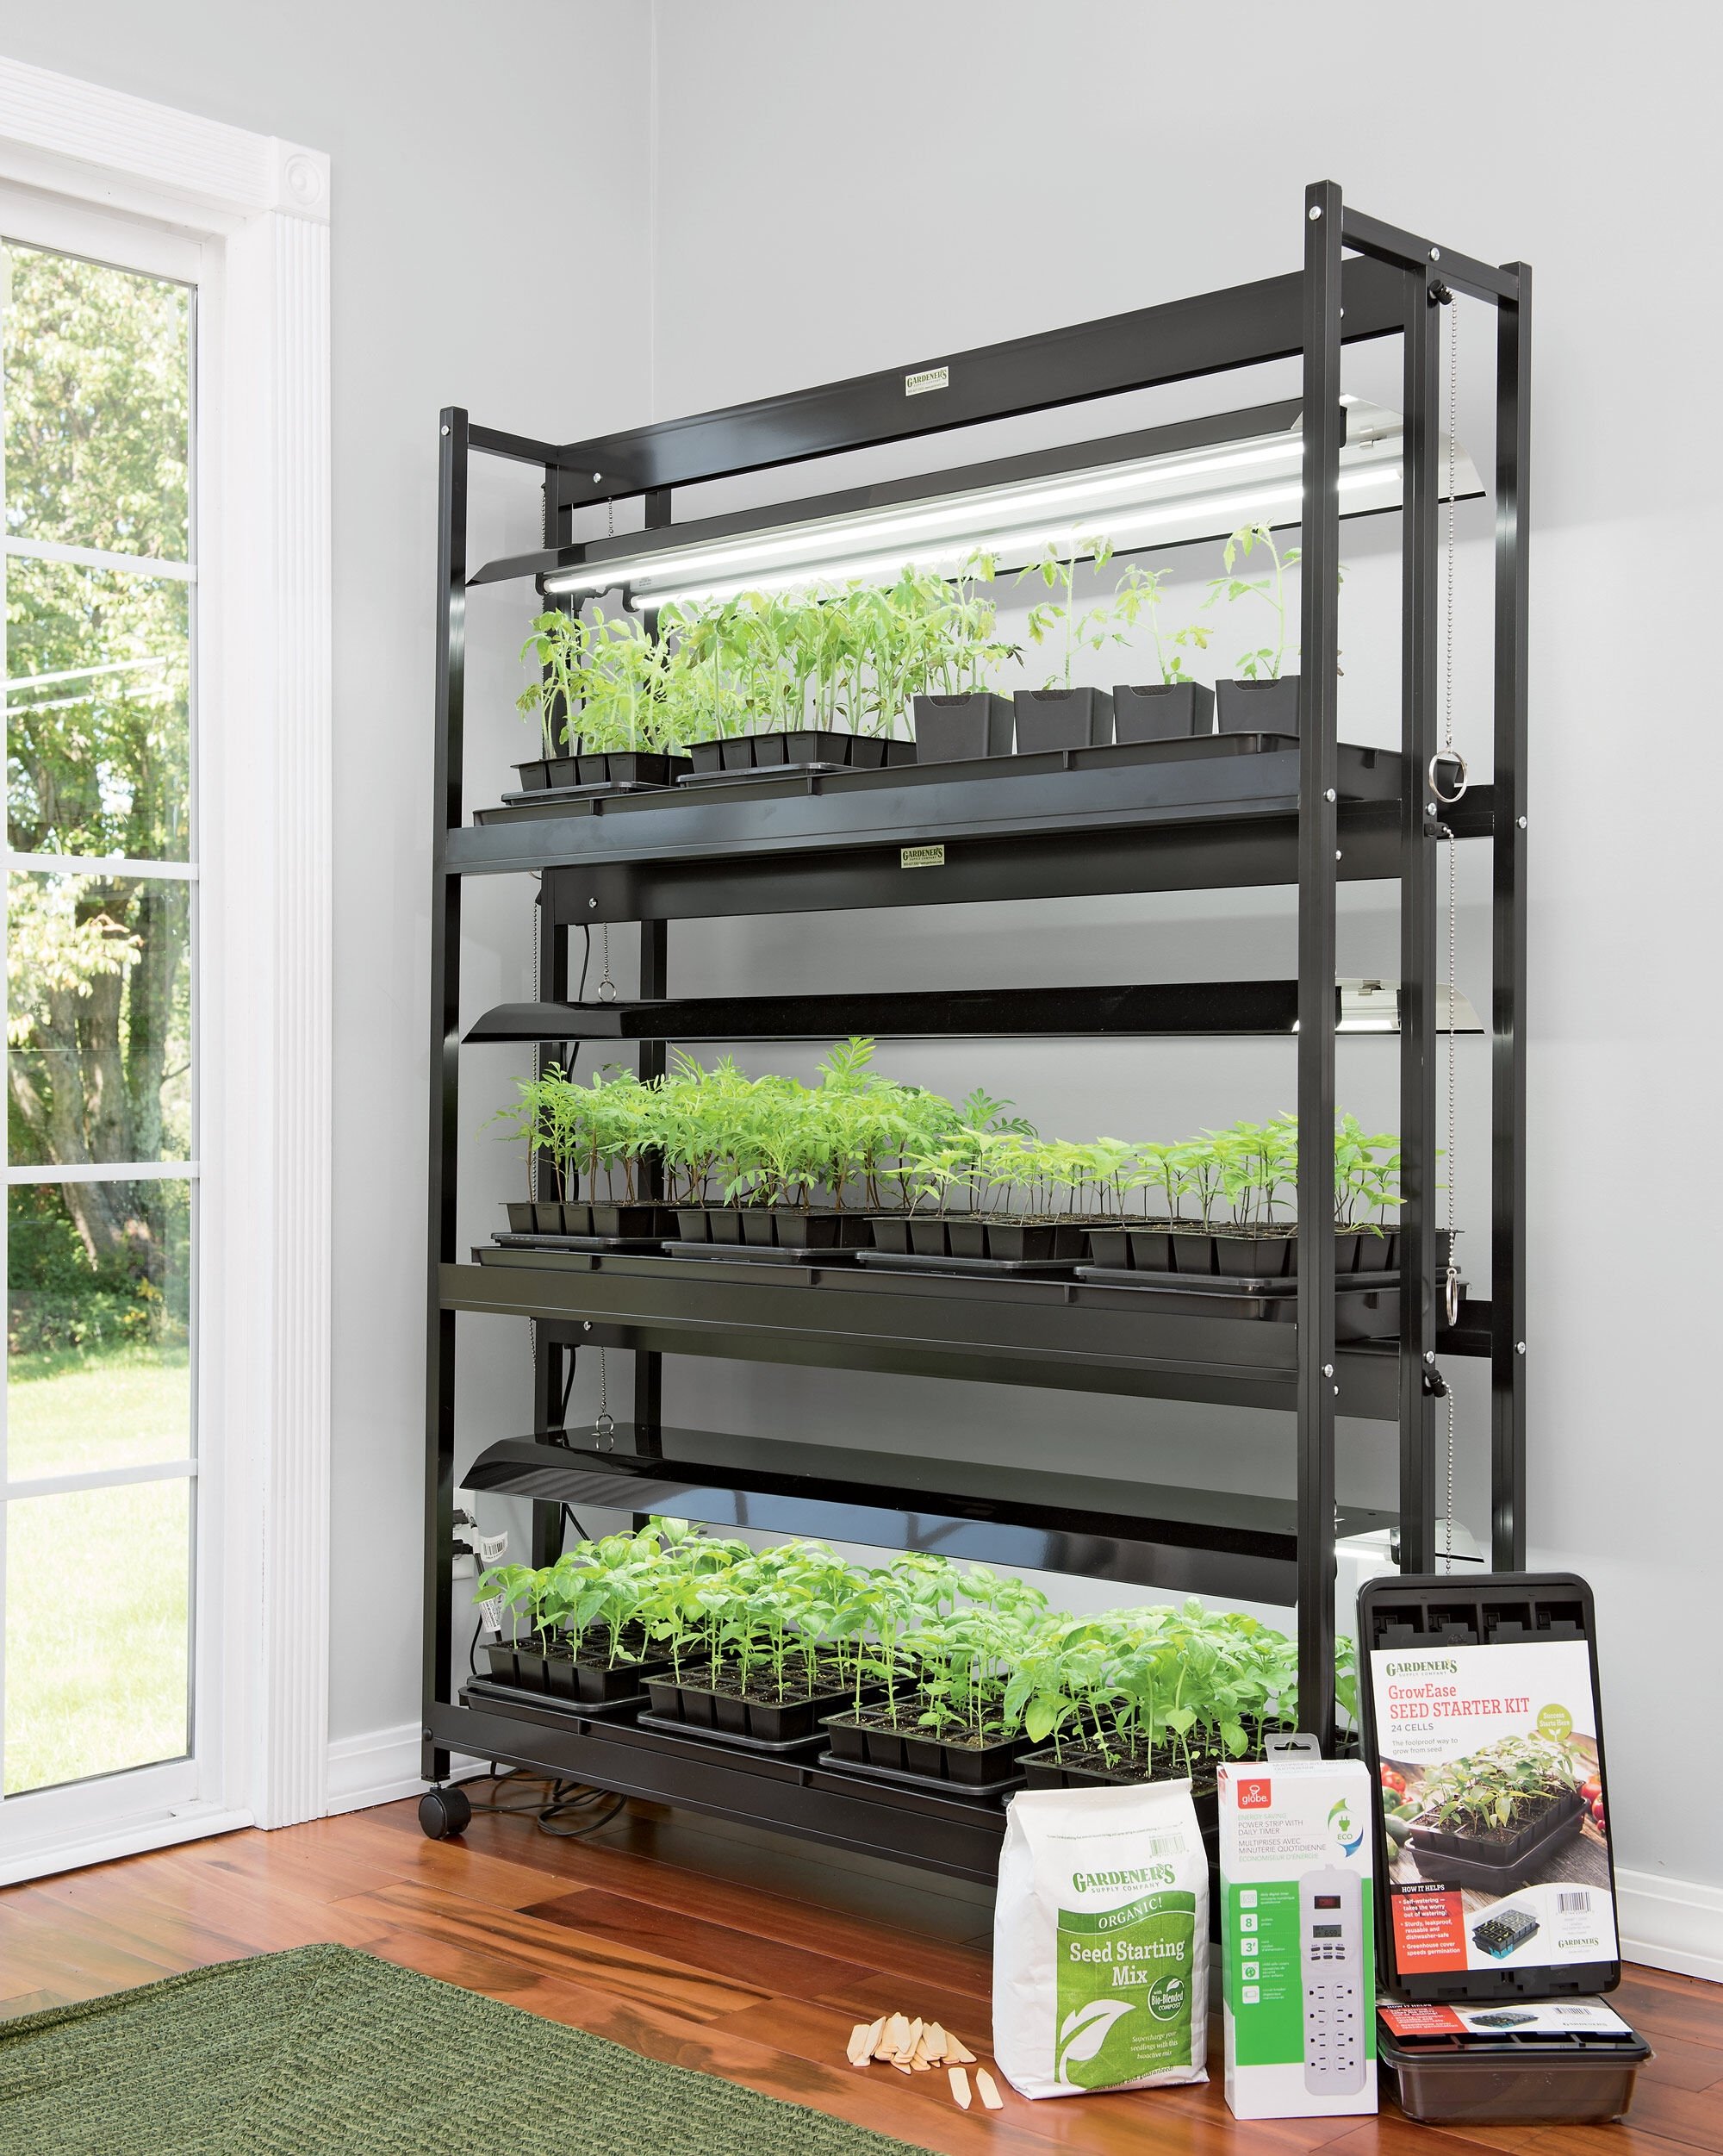 Regulering Fru At tilpasse sig LED Sunlite 3-Tier Grow Lights Garden Starter Kit | Gardeners.com